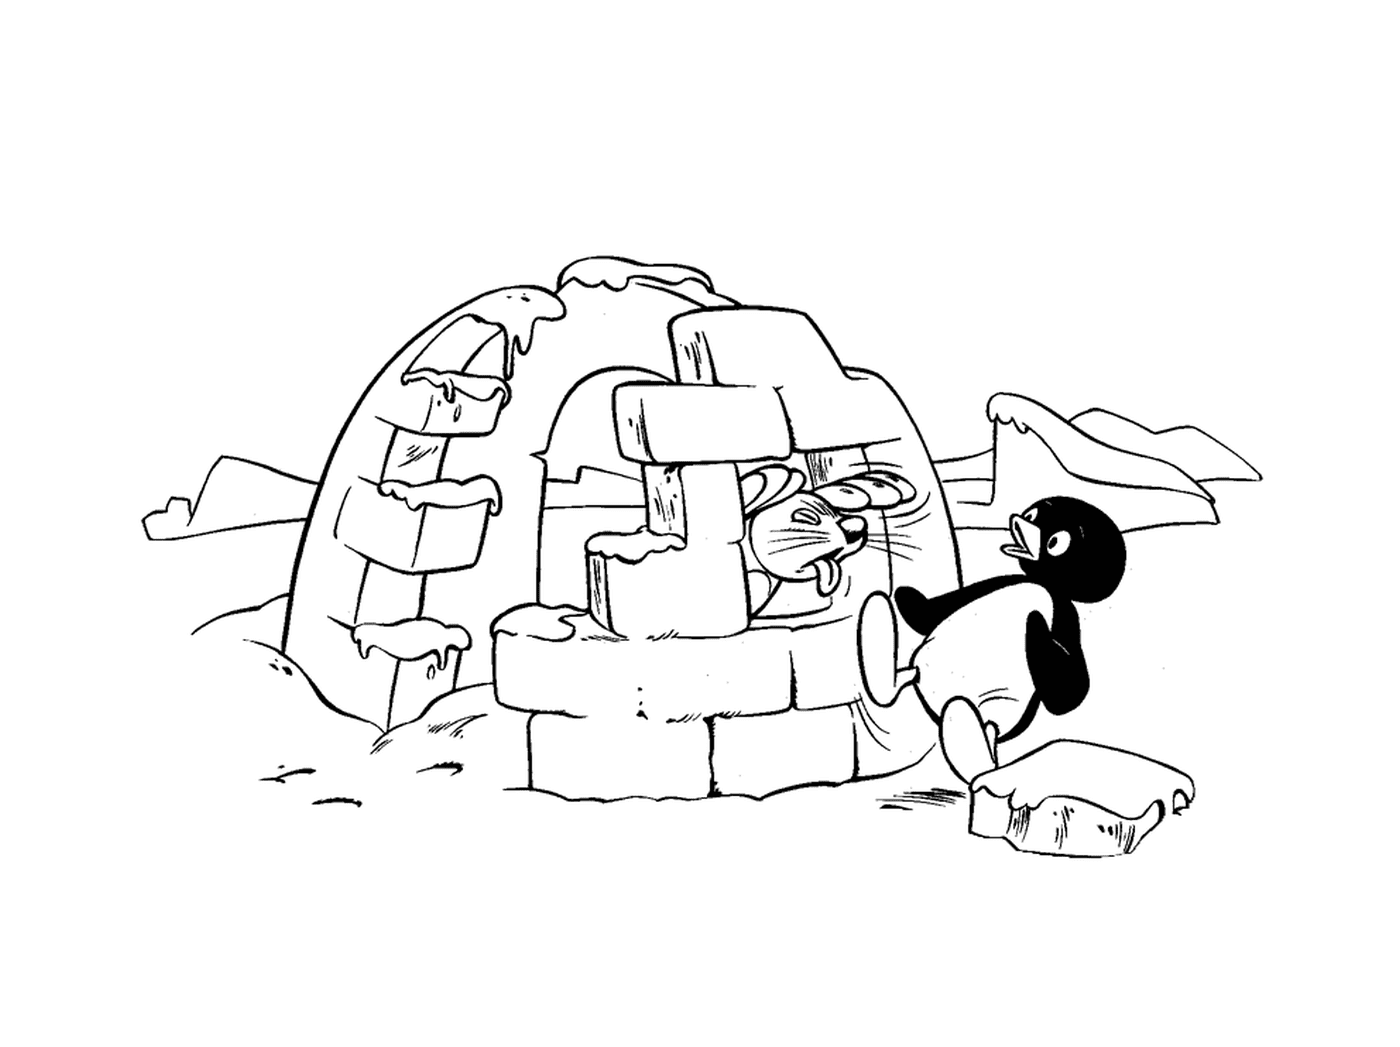  Pingu vicino a un igloo con una guarnizione 